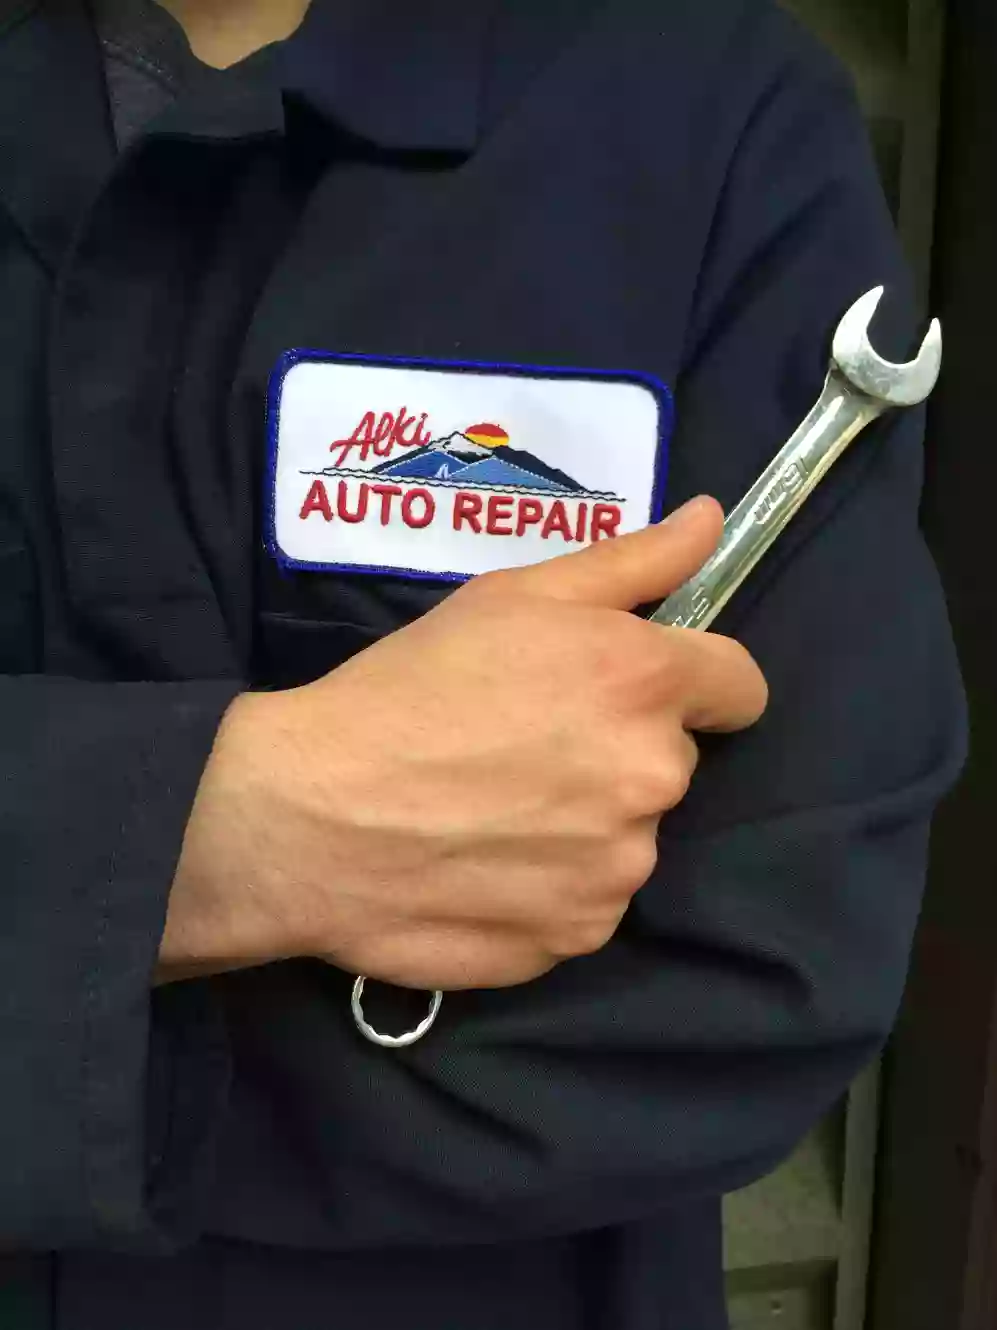 Alki Auto Repair